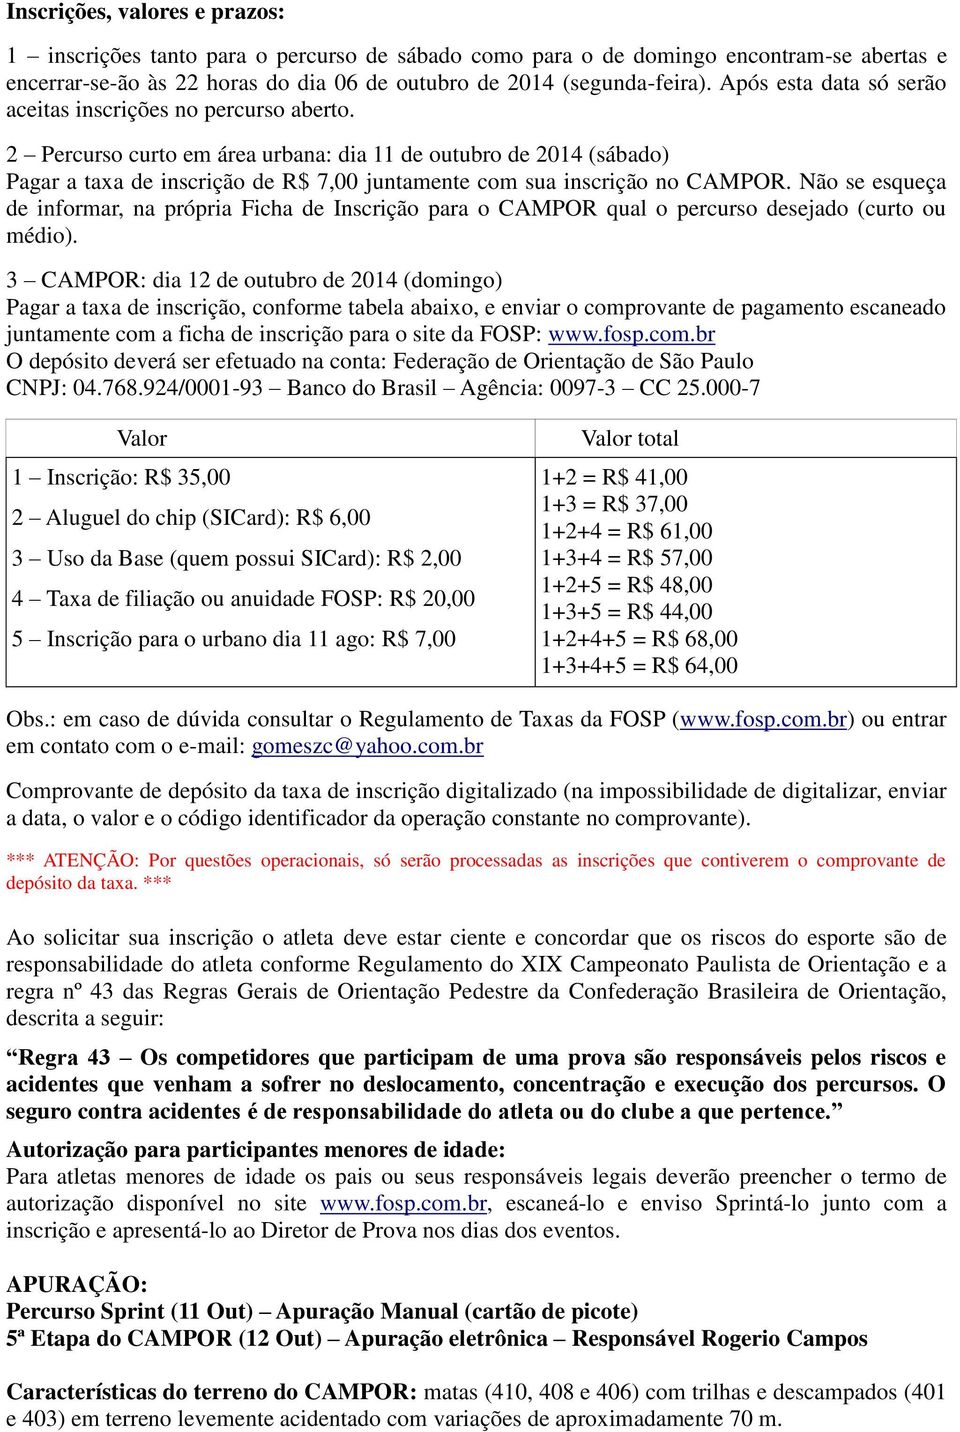 2 Percurso curto em área urbana: dia 11 de outubro de 2014 (sábado) Pagar a taxa de inscrição de R$ 7,00 juntamente com sua inscrição no CAMPOR.